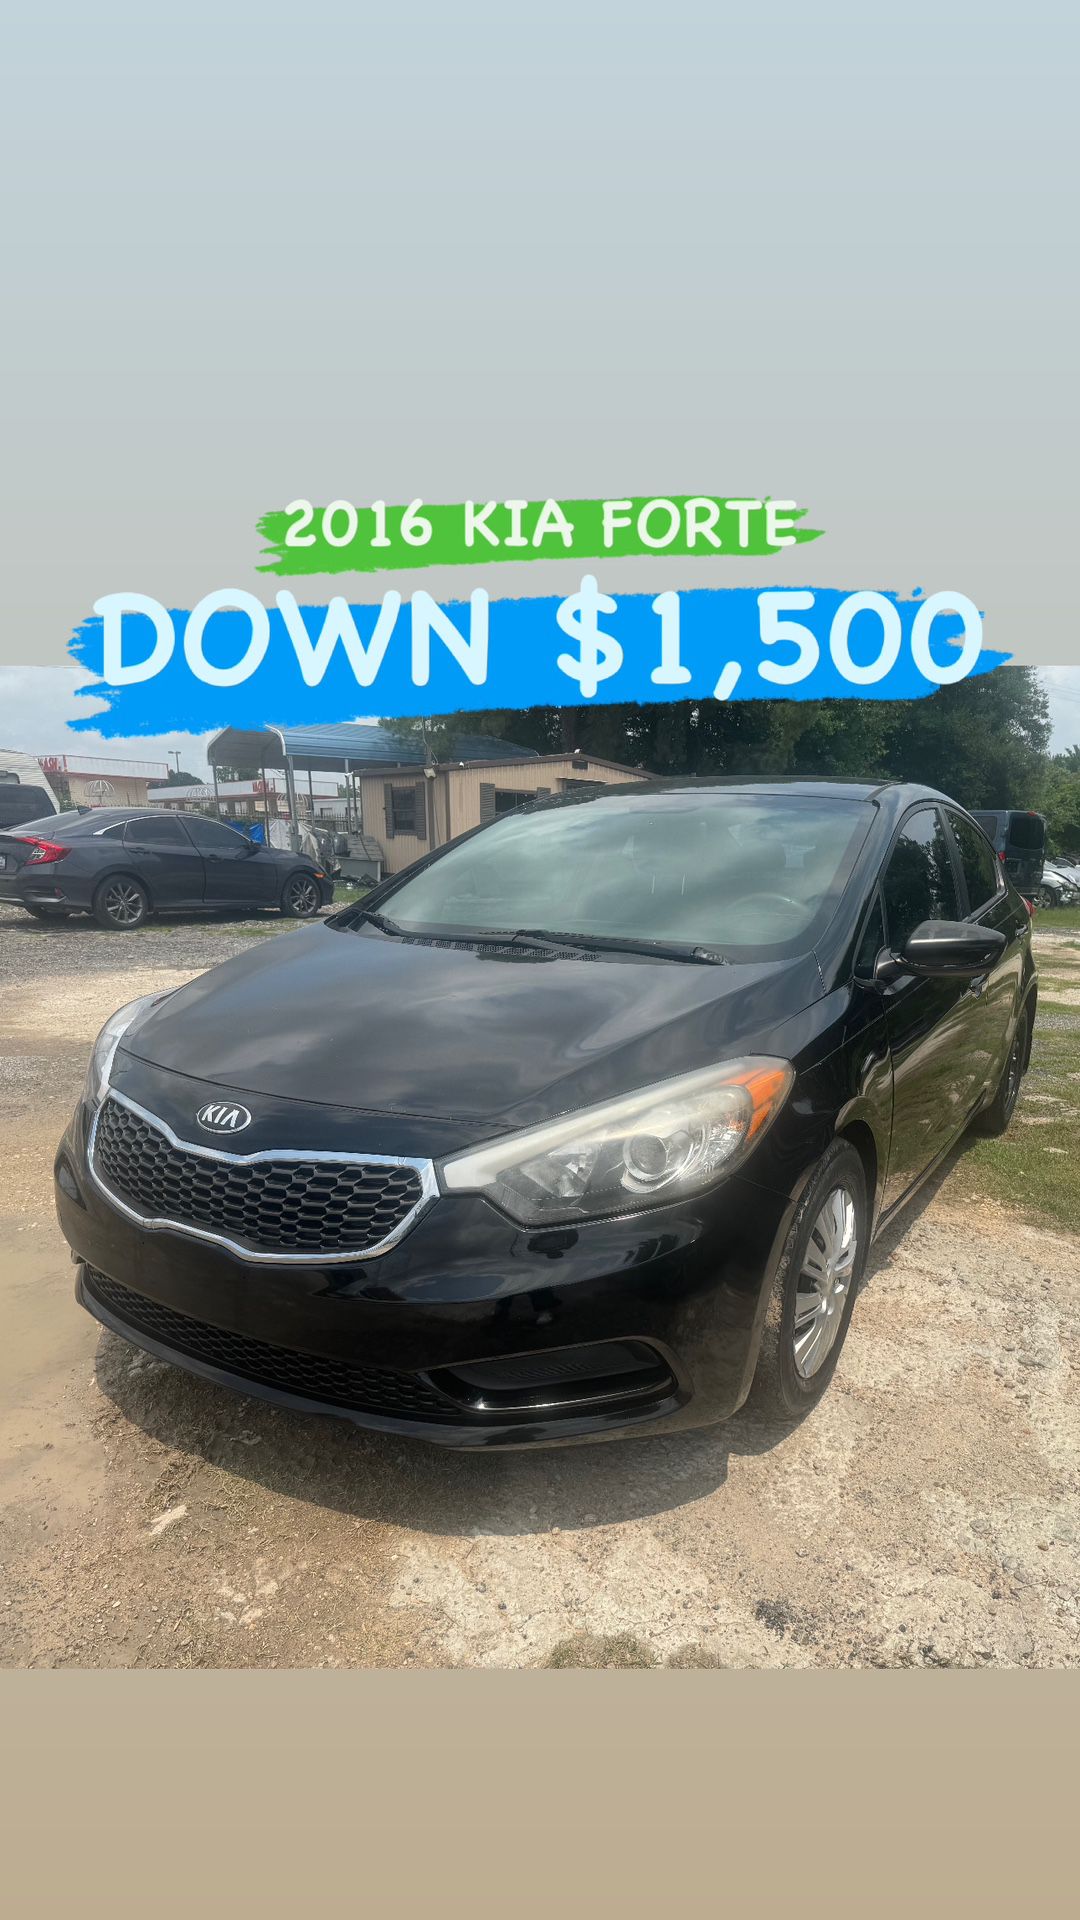 2016 KIA FORTE - Down $1,500